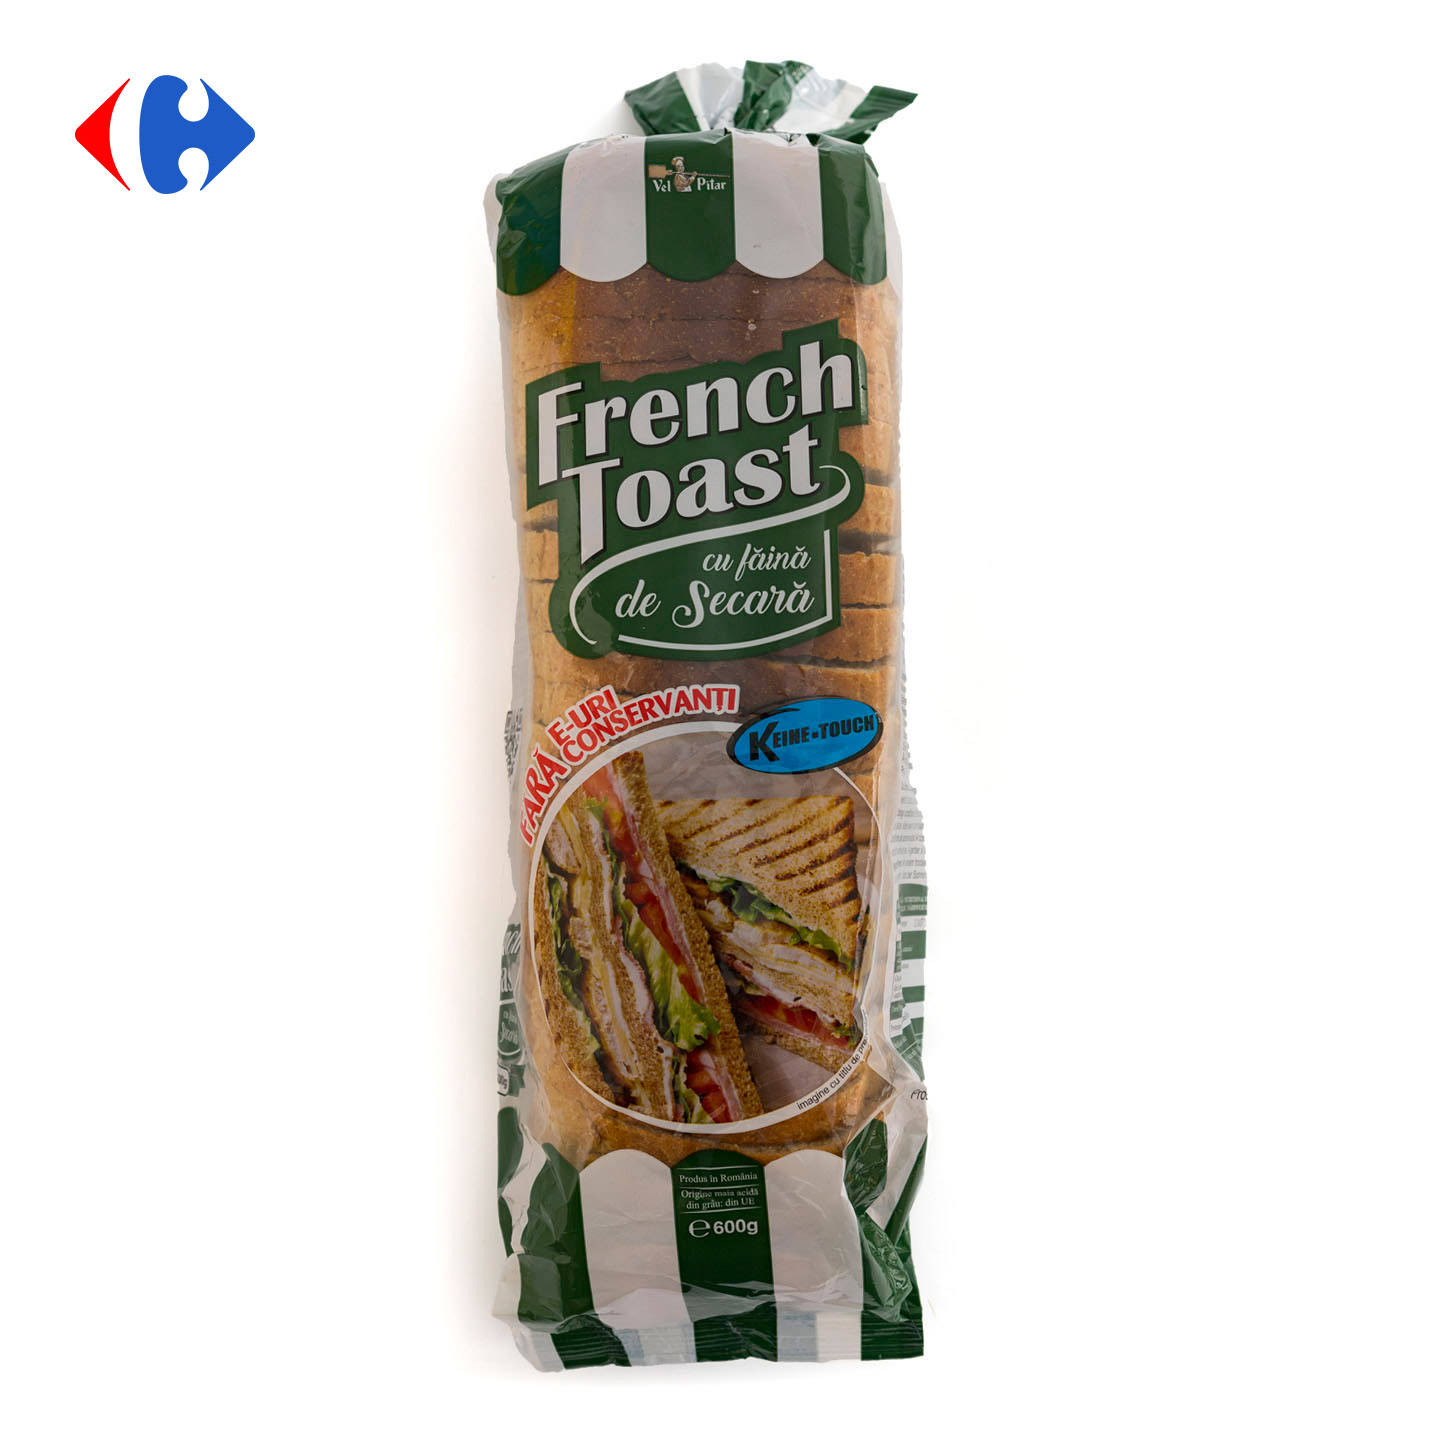 French Toast cu făină de secară Vel Pitar 600g